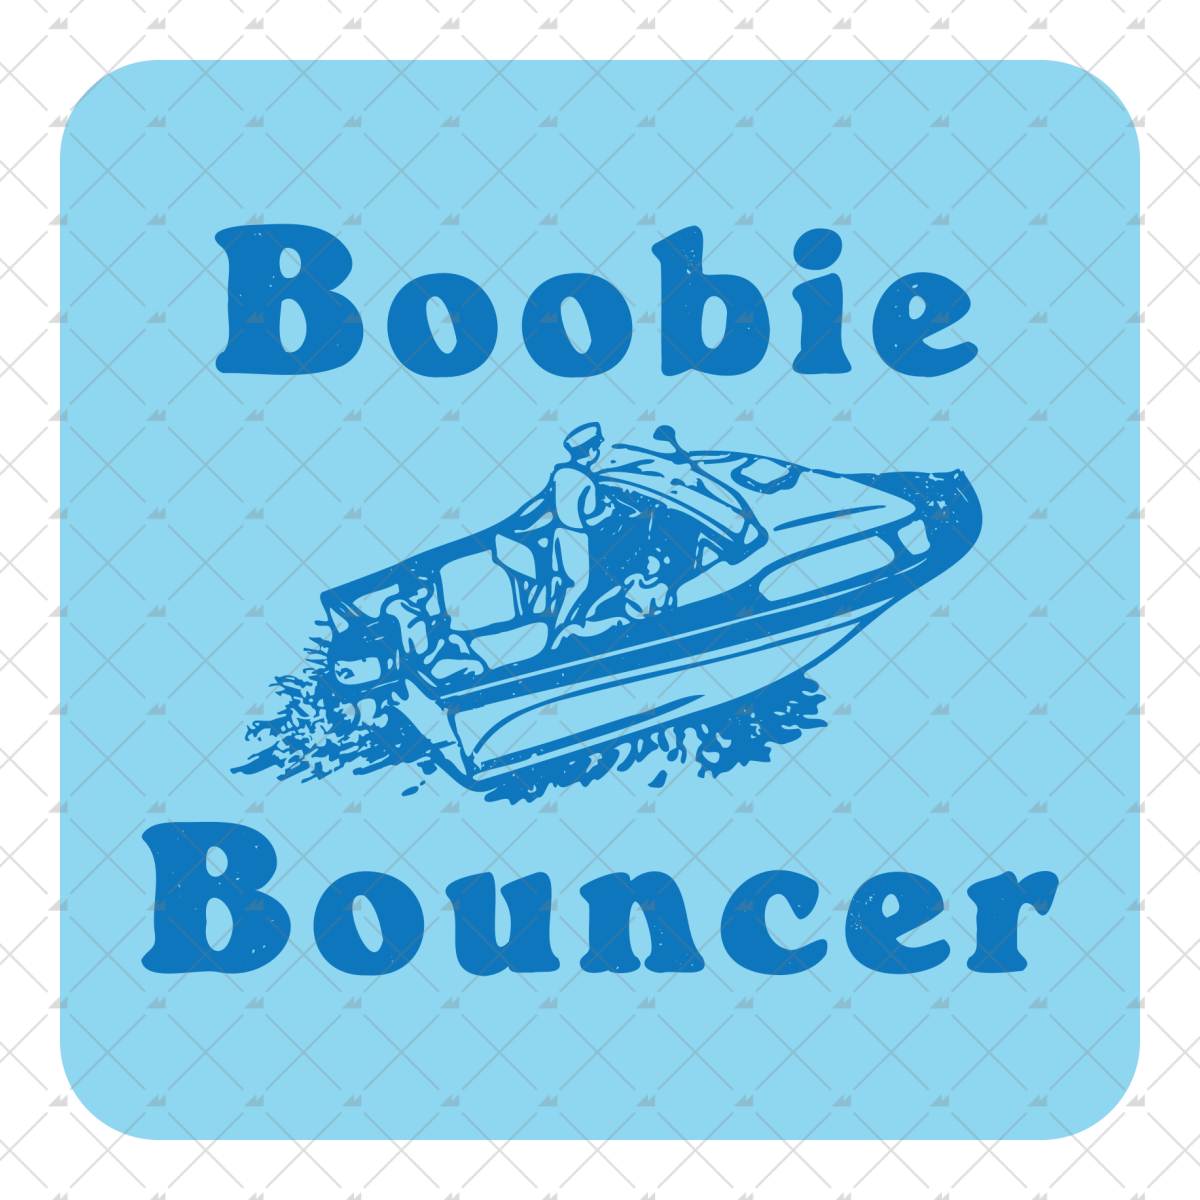 Boobie Bouncer - Sticker